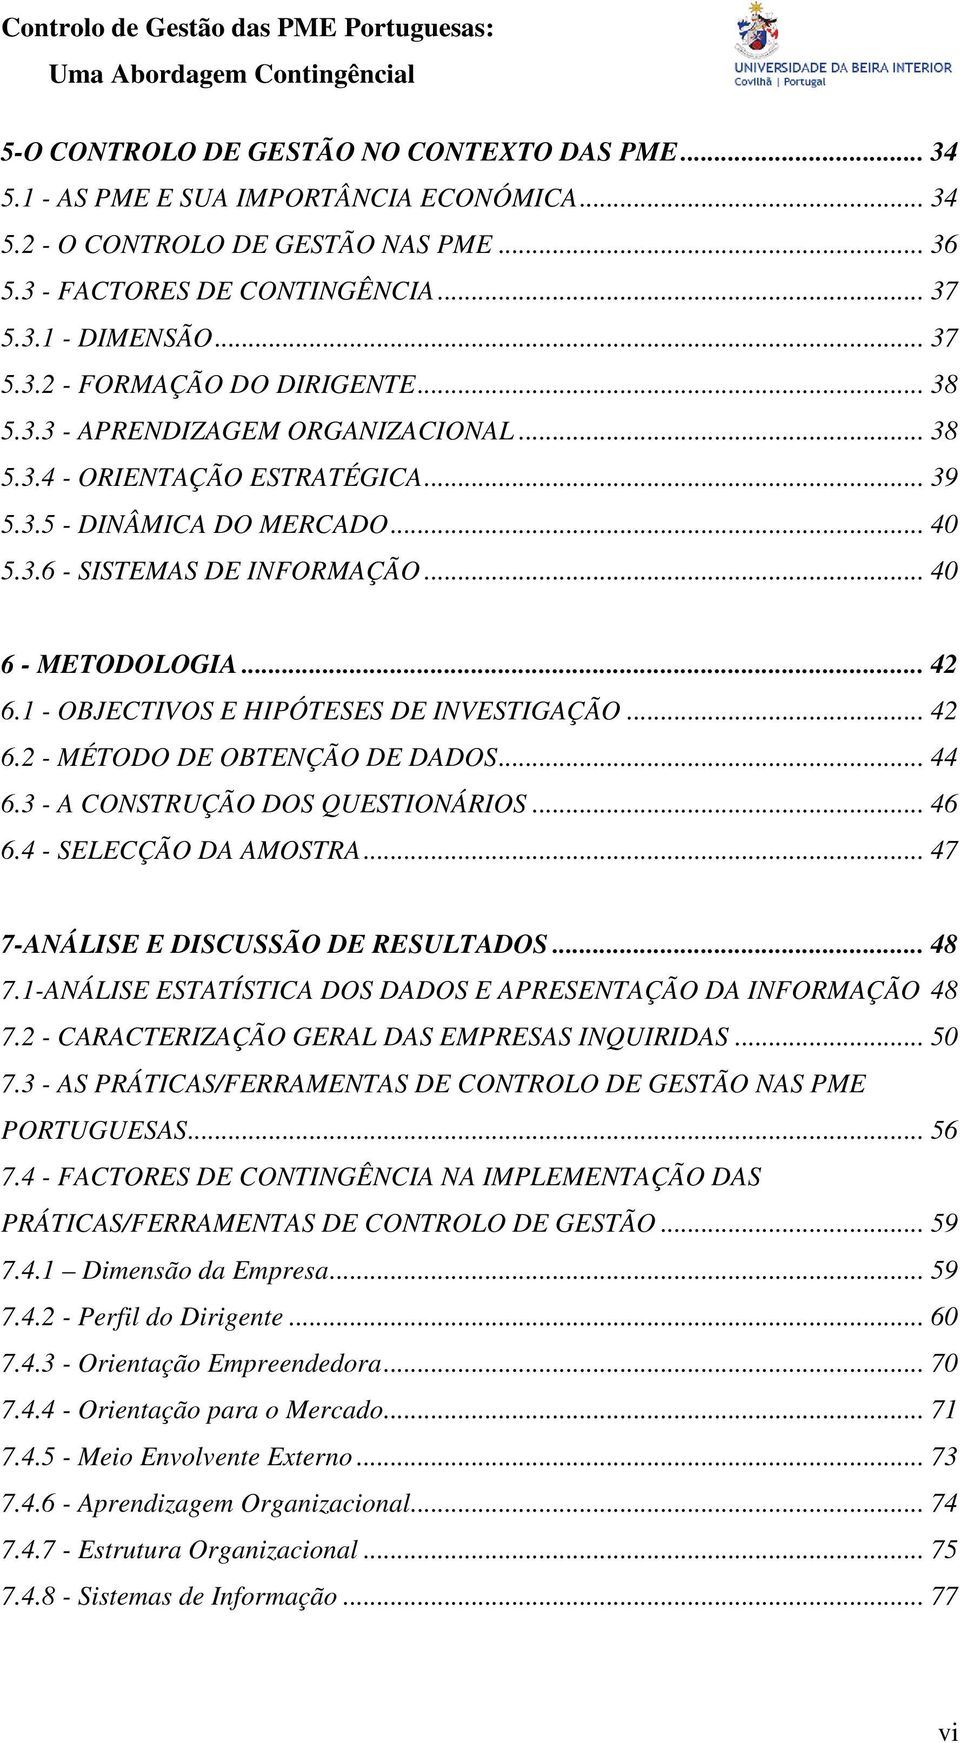 1 - OBJECTIVOS E HIPÓTESES DE INVESTIGAÇÃO... 42 6.2 - MÉTODO DE OBTENÇÃO DE DADOS... 44 6.3 - A CONSTRUÇÃO DOS QUESTIONÁRIOS... 46 6.4 - SELECÇÃO DA AMOSTRA... 47 7-ANÁLISE E DISCUSSÃO DE RESULTADOS.